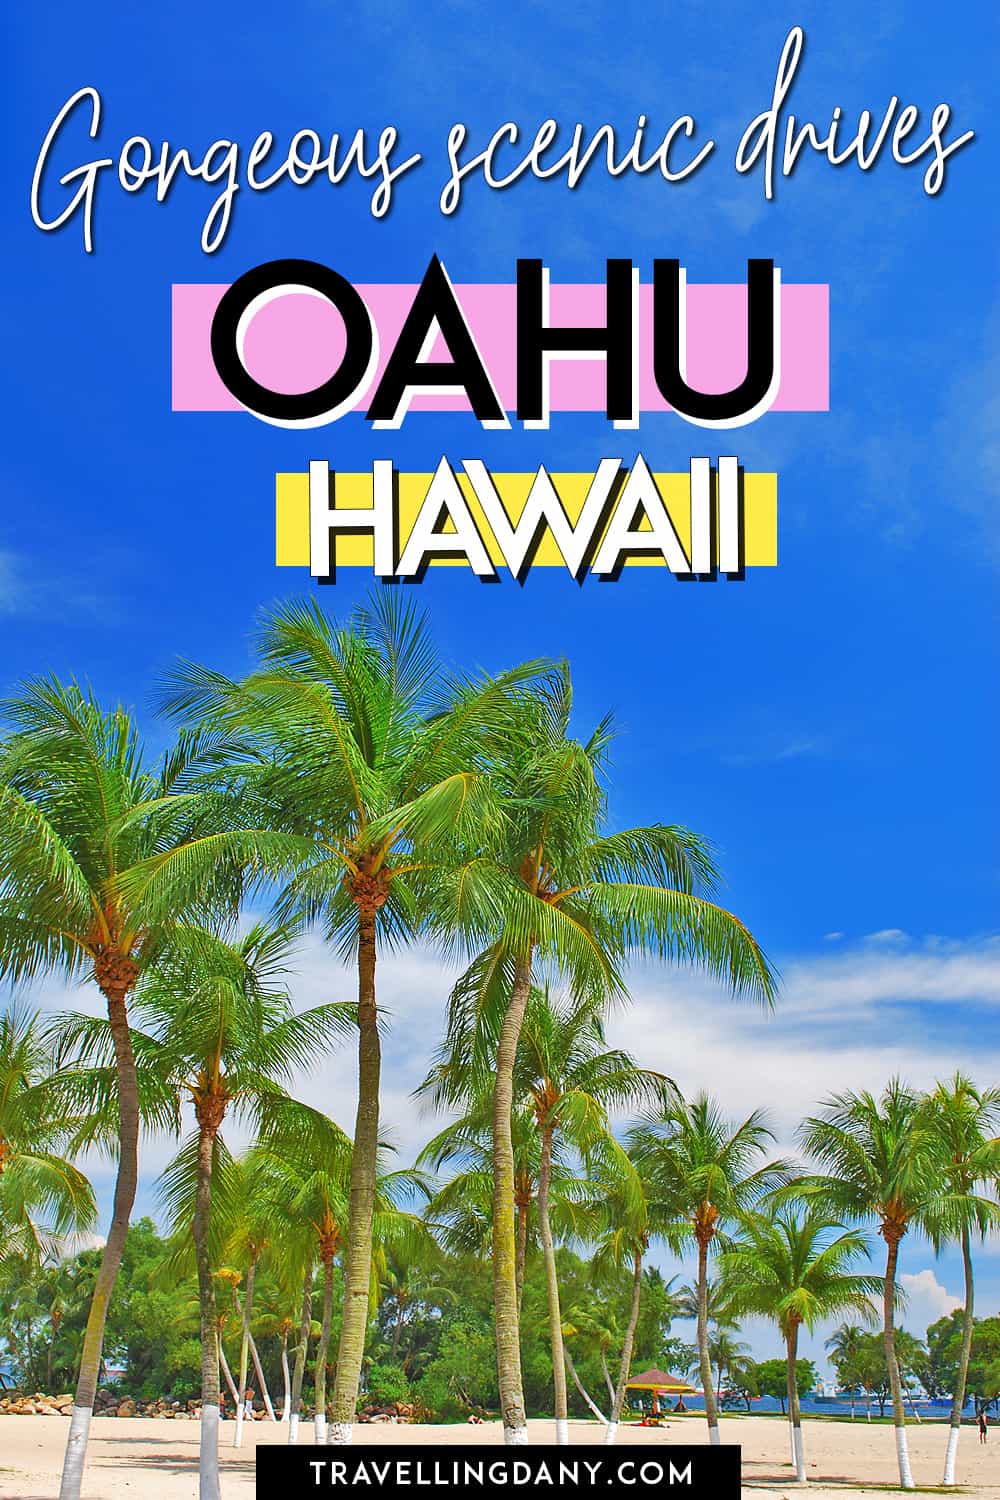 9 fantastiche strade panoramiche a Oahu per le tue vacanze alle Hawaii! Scopri tutte le gite a Oahu che puoi organizzare in autonomia durante un viaggio a Honolulu. Con consigli utili, spiagge, punti panoramici, sport acquatici e tanto altro!